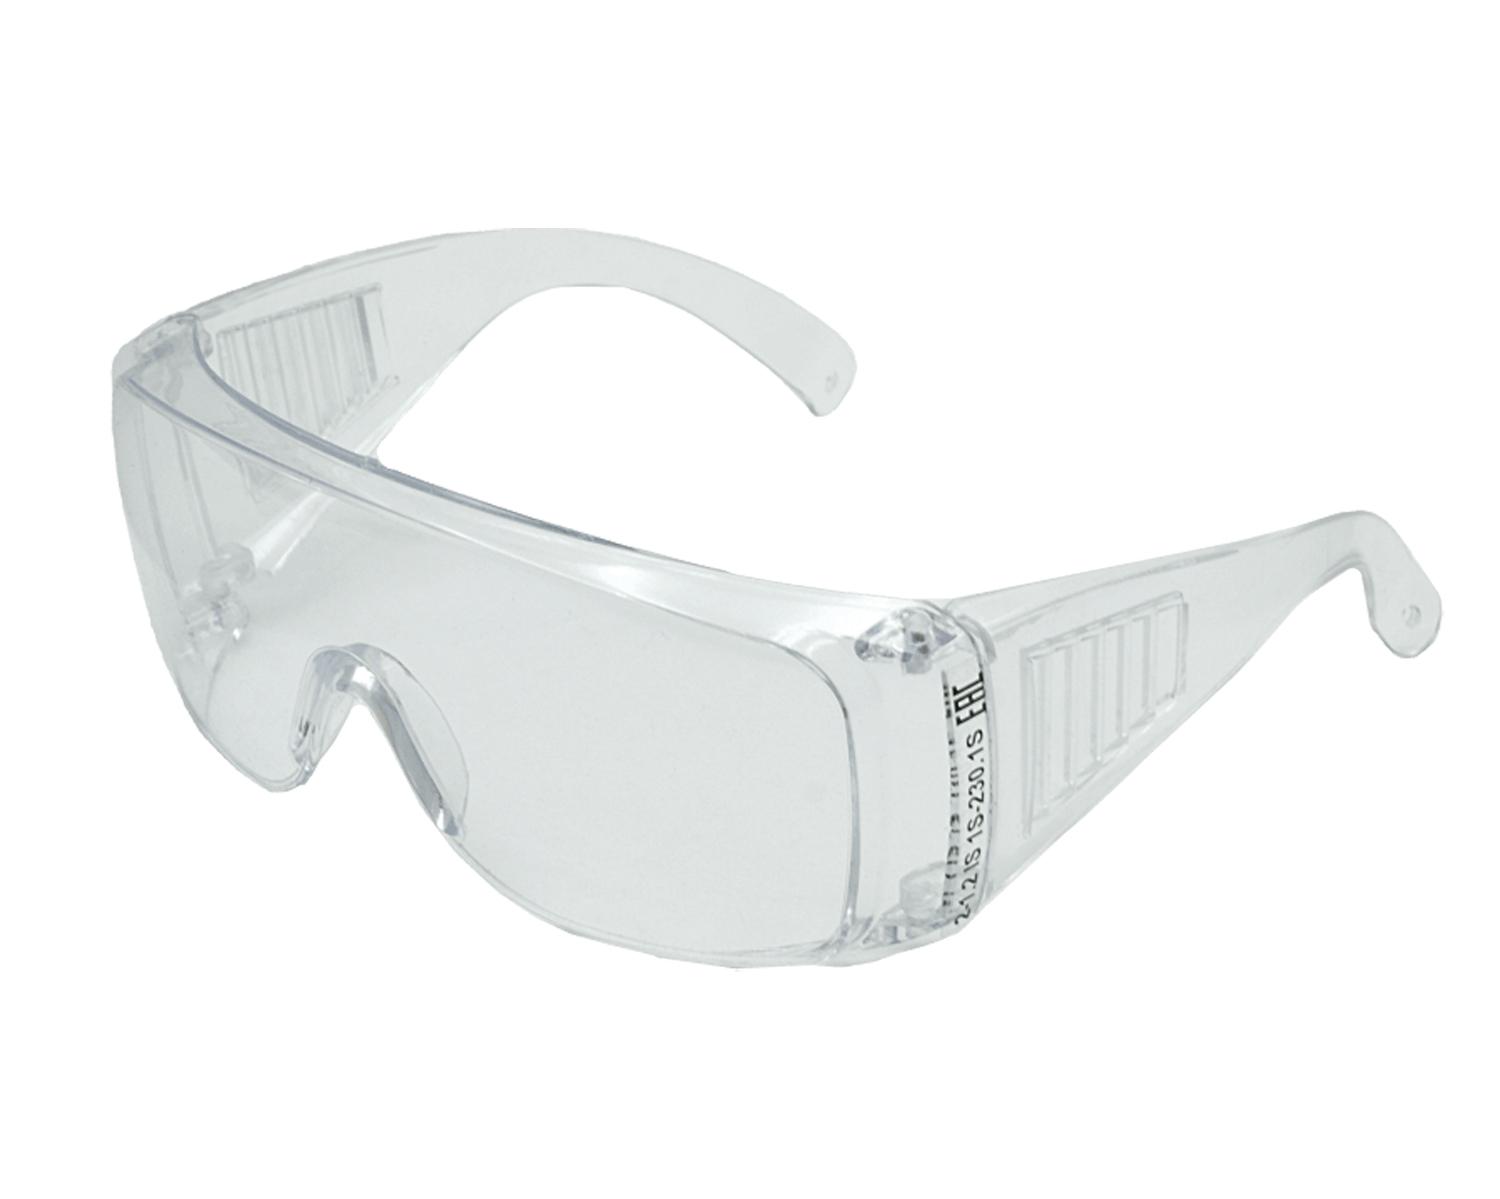 Открытые защитные очки поликарбонат. Очки защитные Stihl Standard. Очки защитные открытые о35 ВИЗИОН 2с-1.2 PС. Защитные открытые очки INGCO hsg08. Очки защитные Stihl прозрачные.